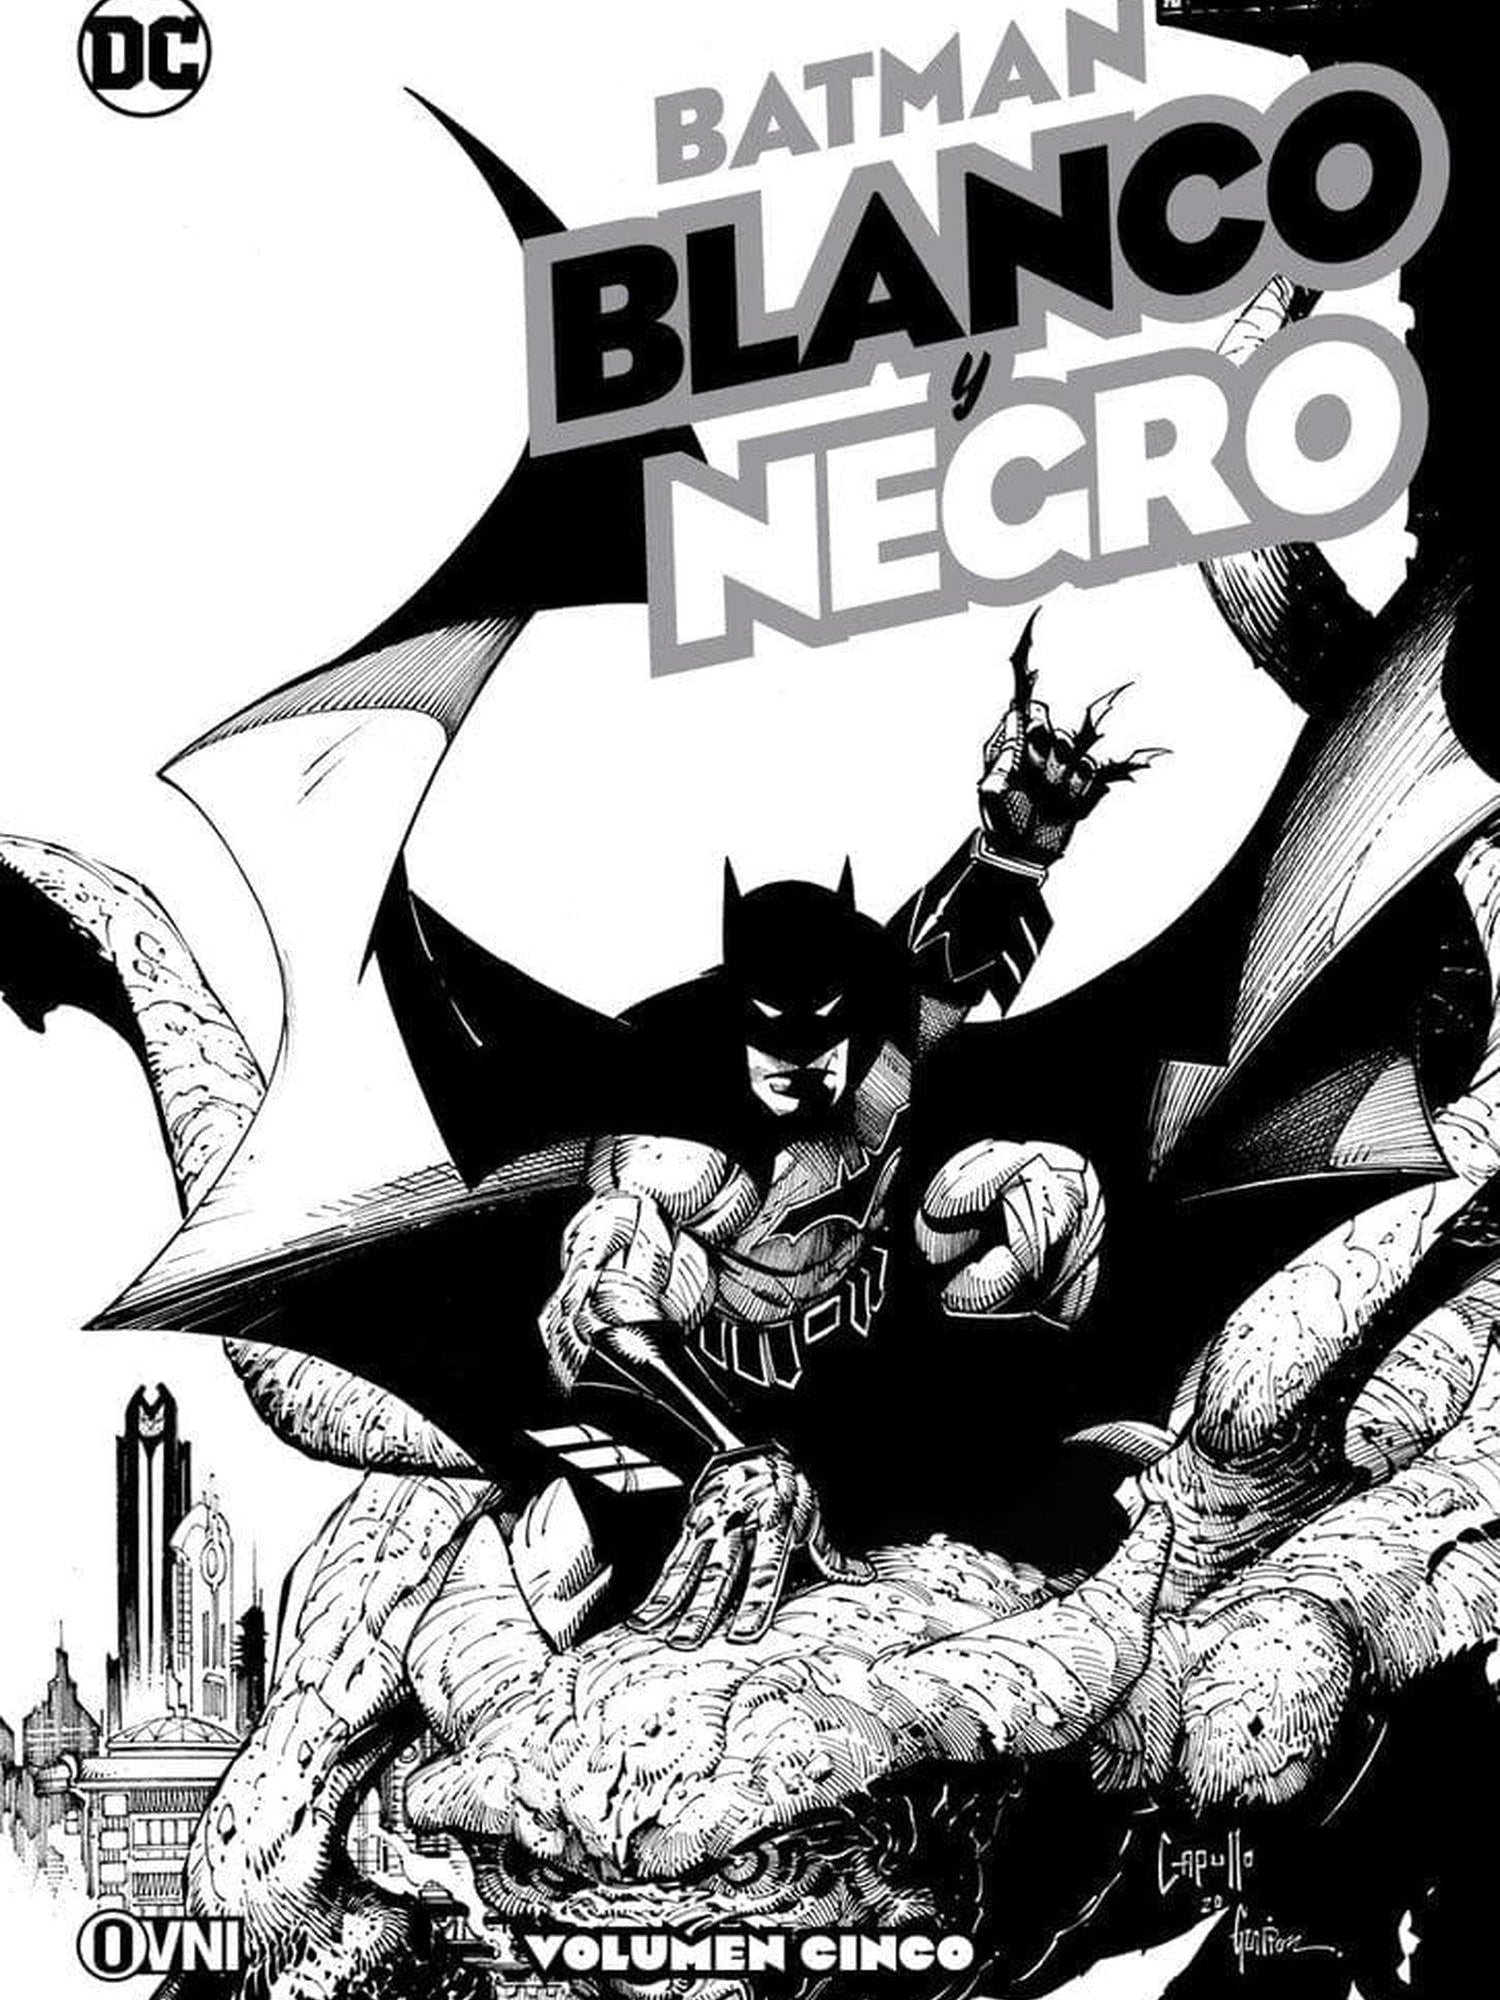 Batman: Blanco y Negro Vol. Cinco